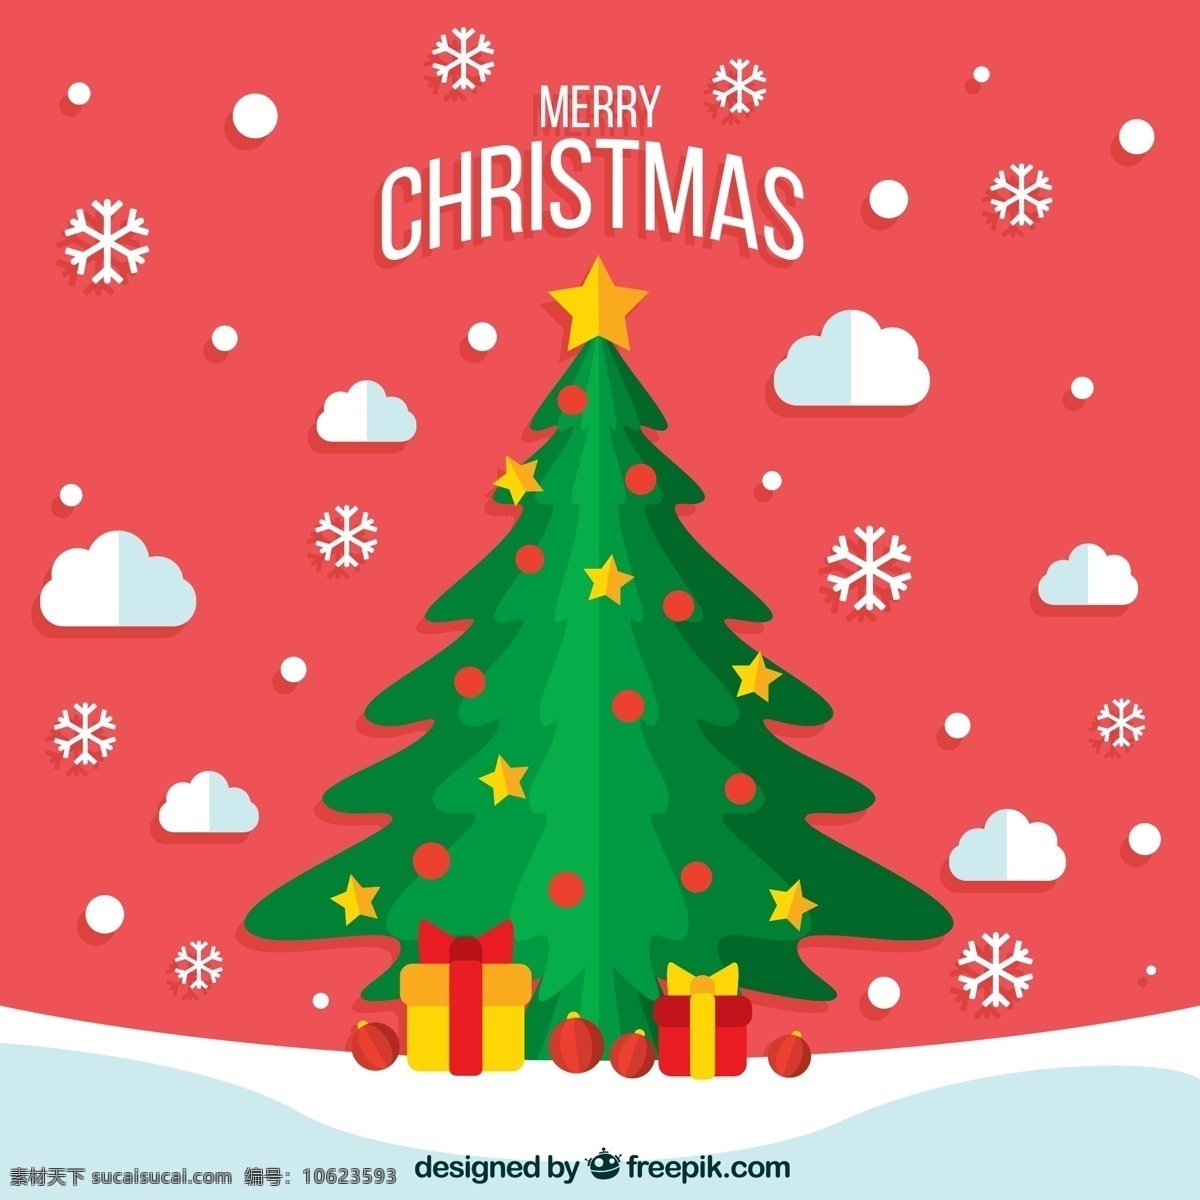 创意 雪地 绿色 圣诞树 矢量 雪花 礼物 节日 圣诞节 冬天 气氛